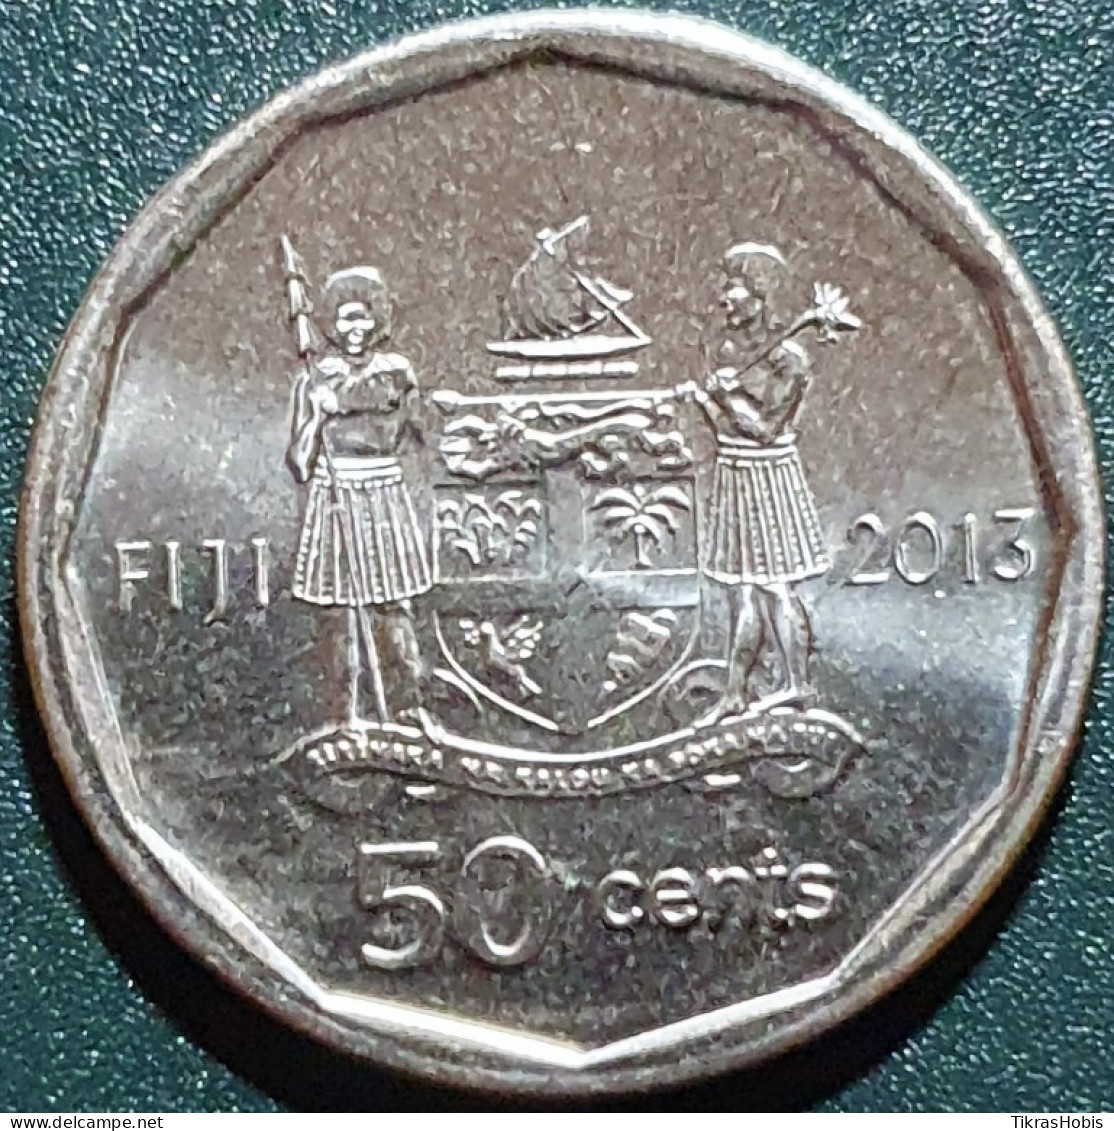 Fiji 50 Cents, 2013 Iliesa Delana KM515 - Figi